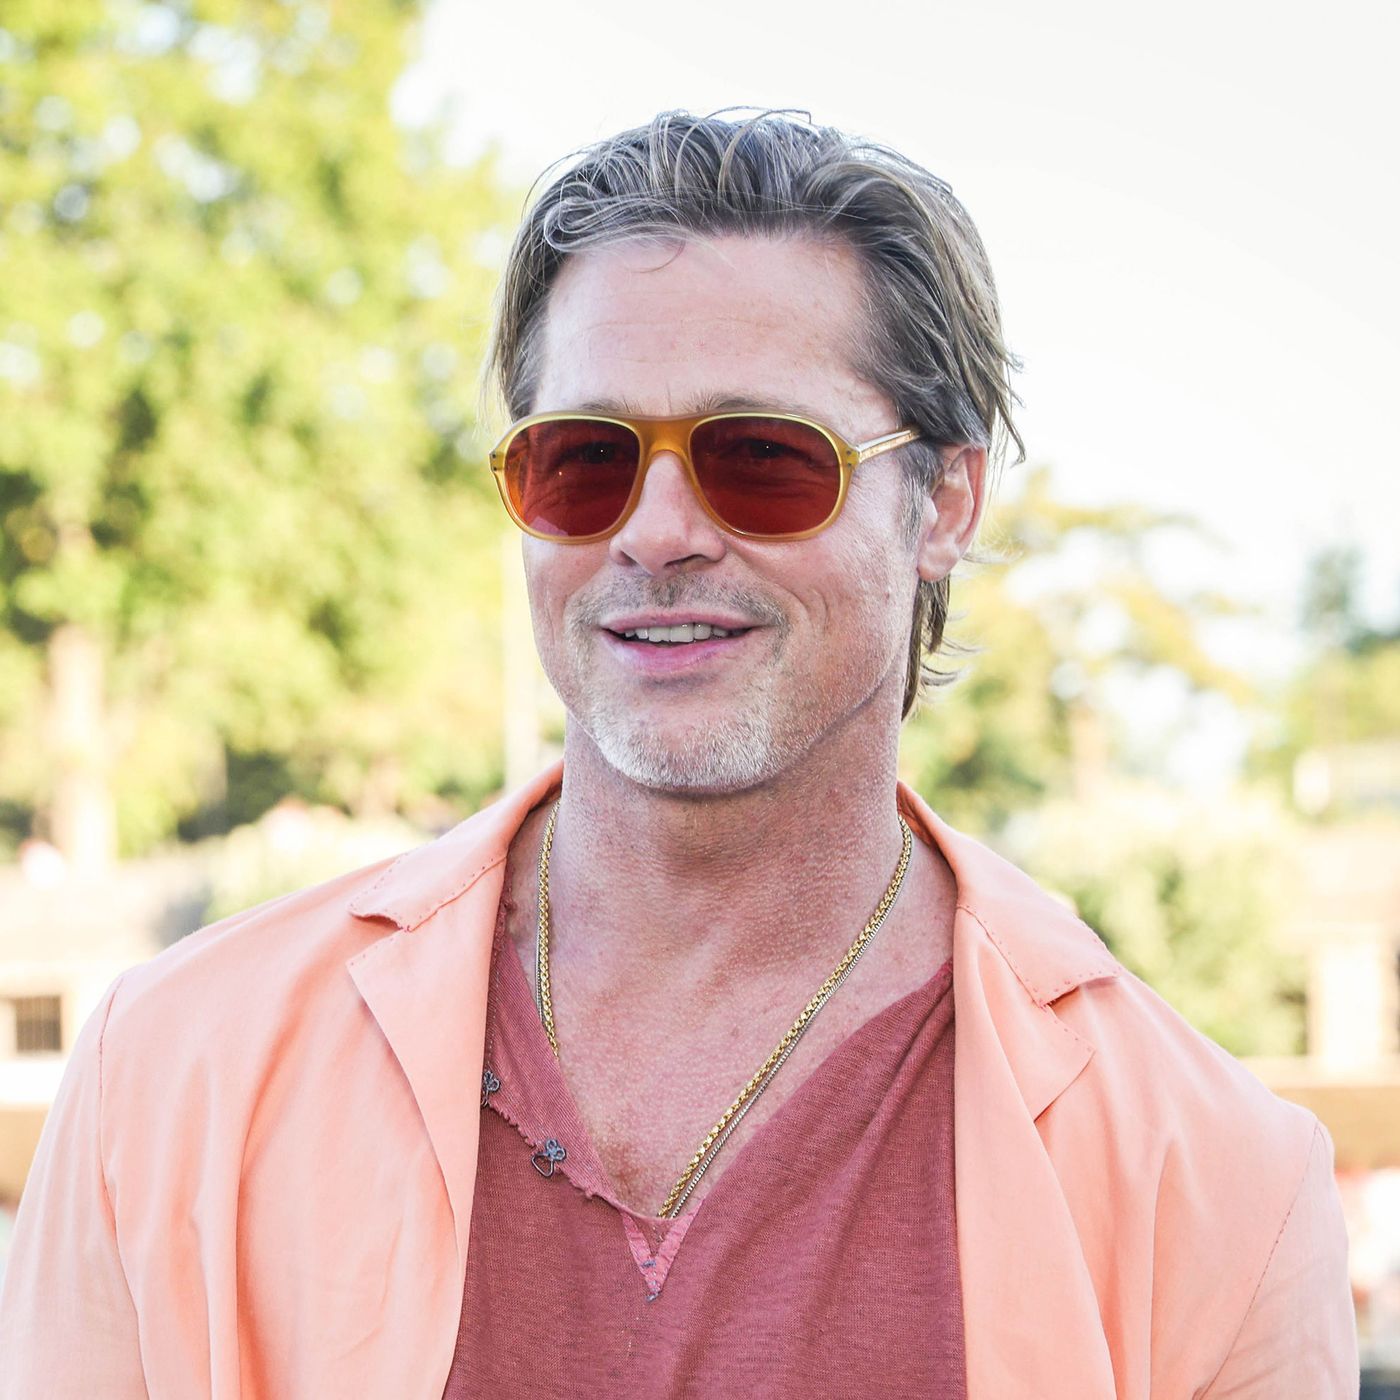 Brad Pitt compra mansão de Aileen Getty em Los Angeles — idealista